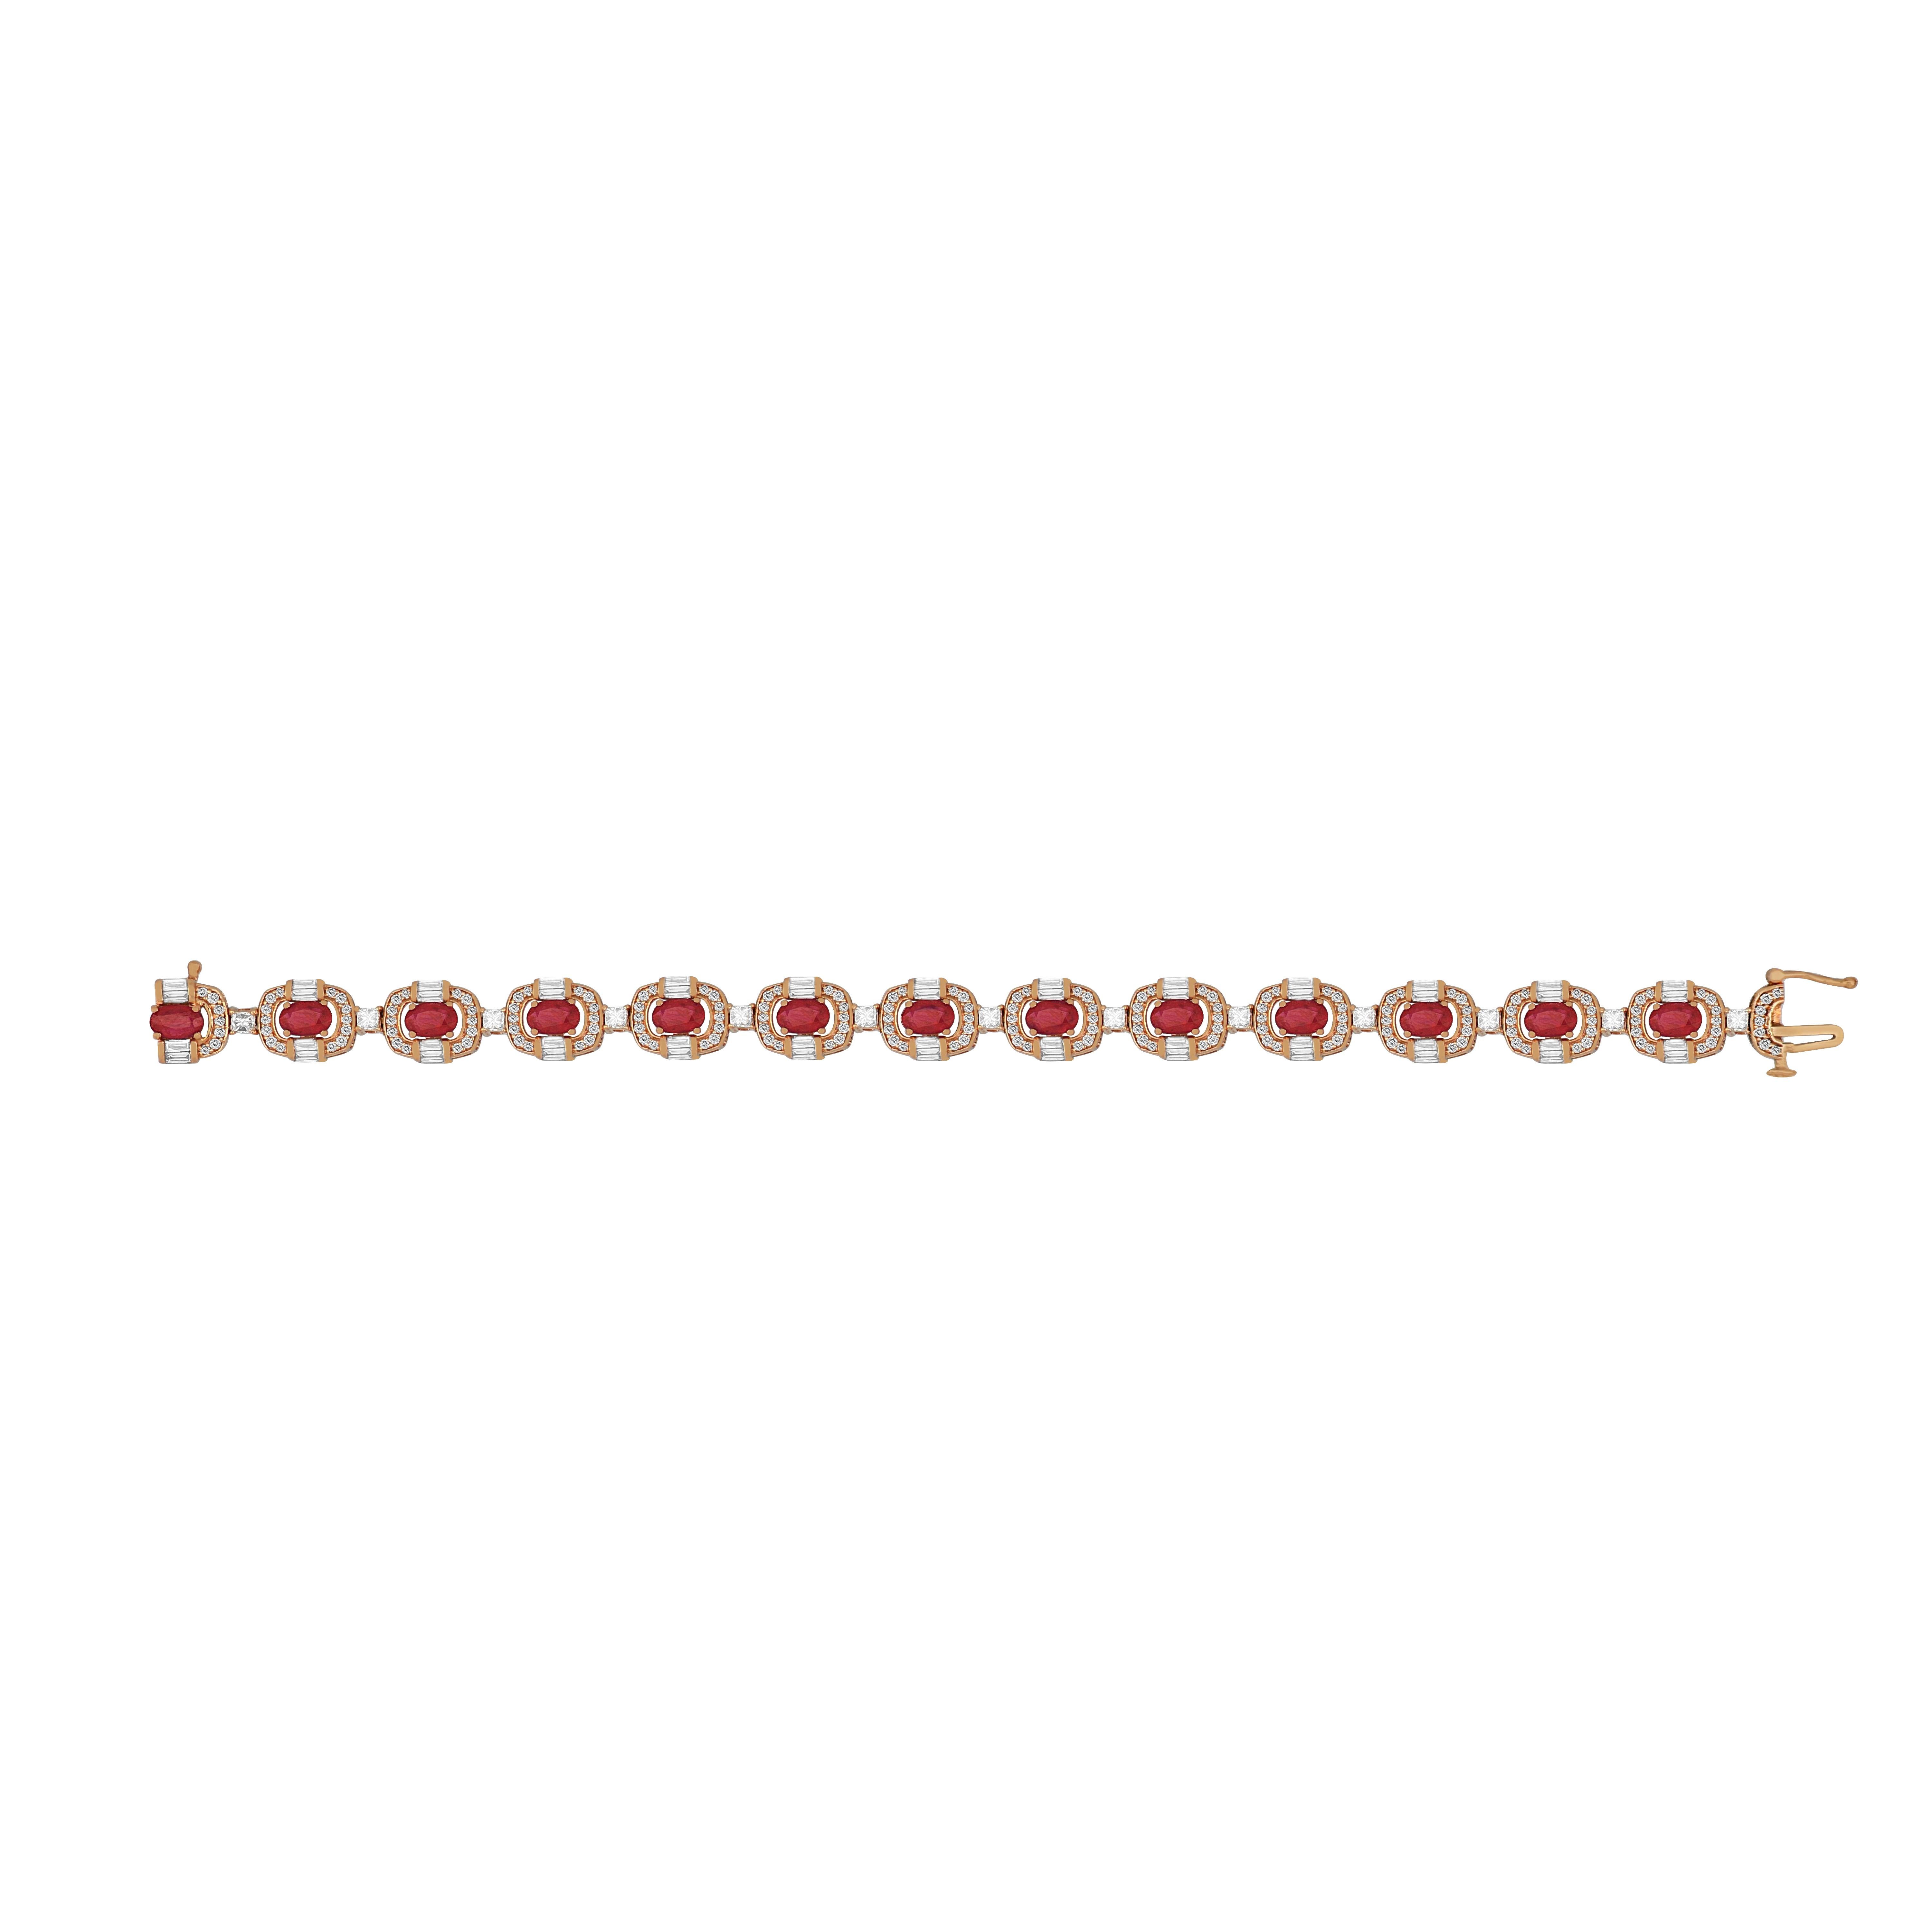 Dieses elegante Armband aus 18 Karat Roségold von Amwaj Jewellery garantiert zartes Funkeln für jeden Anlass. Mit runden, Baguette- und Prinzess-Diamanten, begleitet von einer Reihe von runden Rubinen.

Gewicht: 24.300 g 
Diamant: 2.800 Karat
Farbe